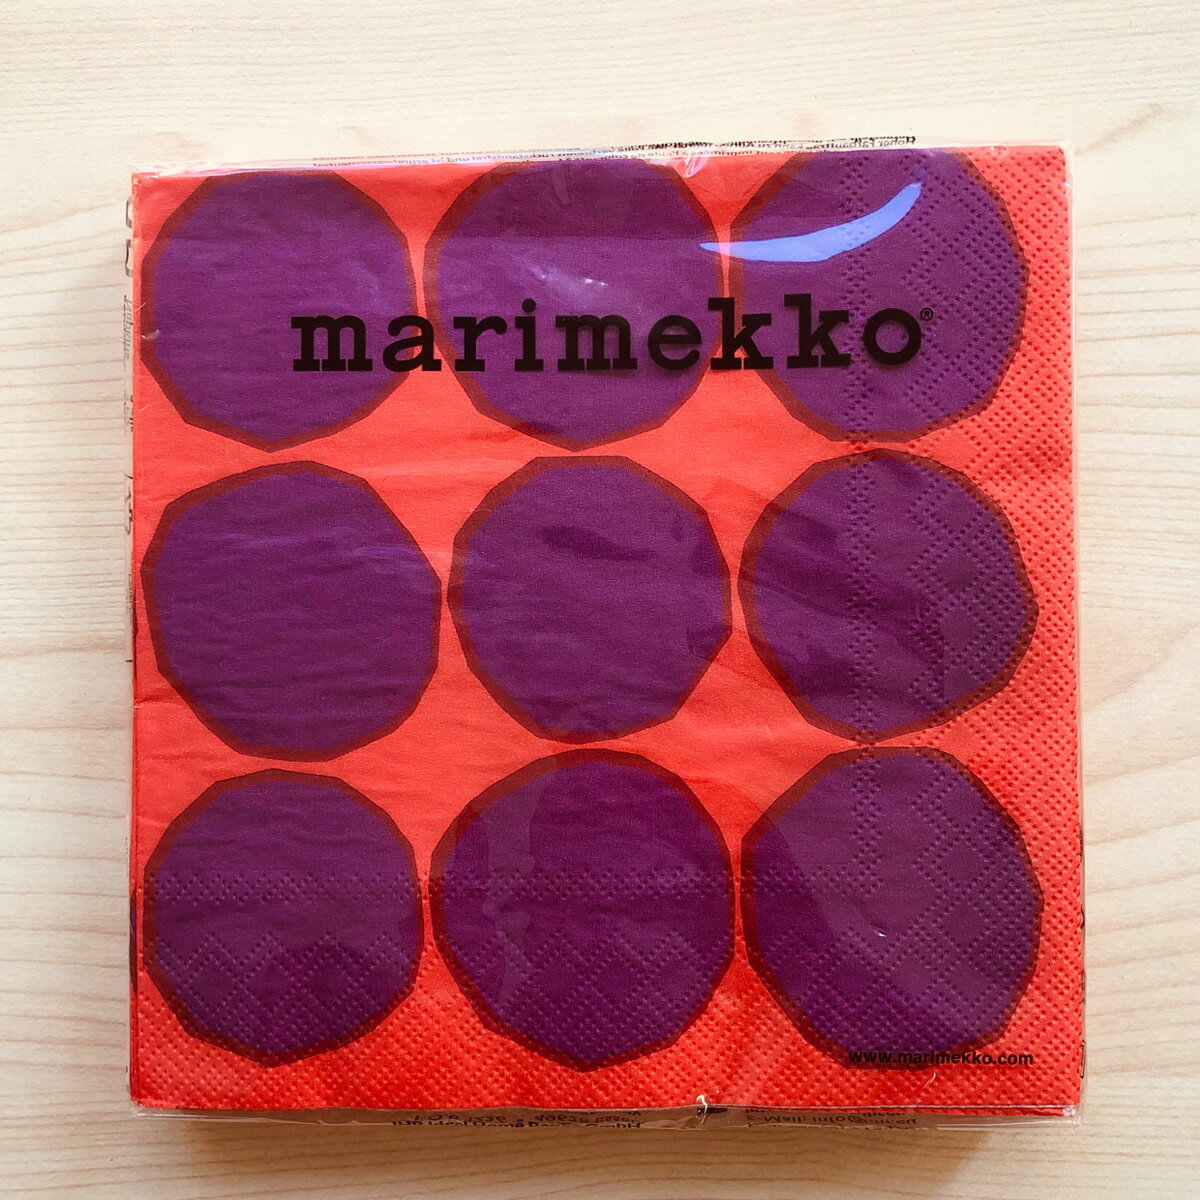 マリメッコ marimekko ペーパーナプキン 紙ナプキン ランチサイズ 20枚 606410 KIVET キヴェット red ドット レッド+パープル